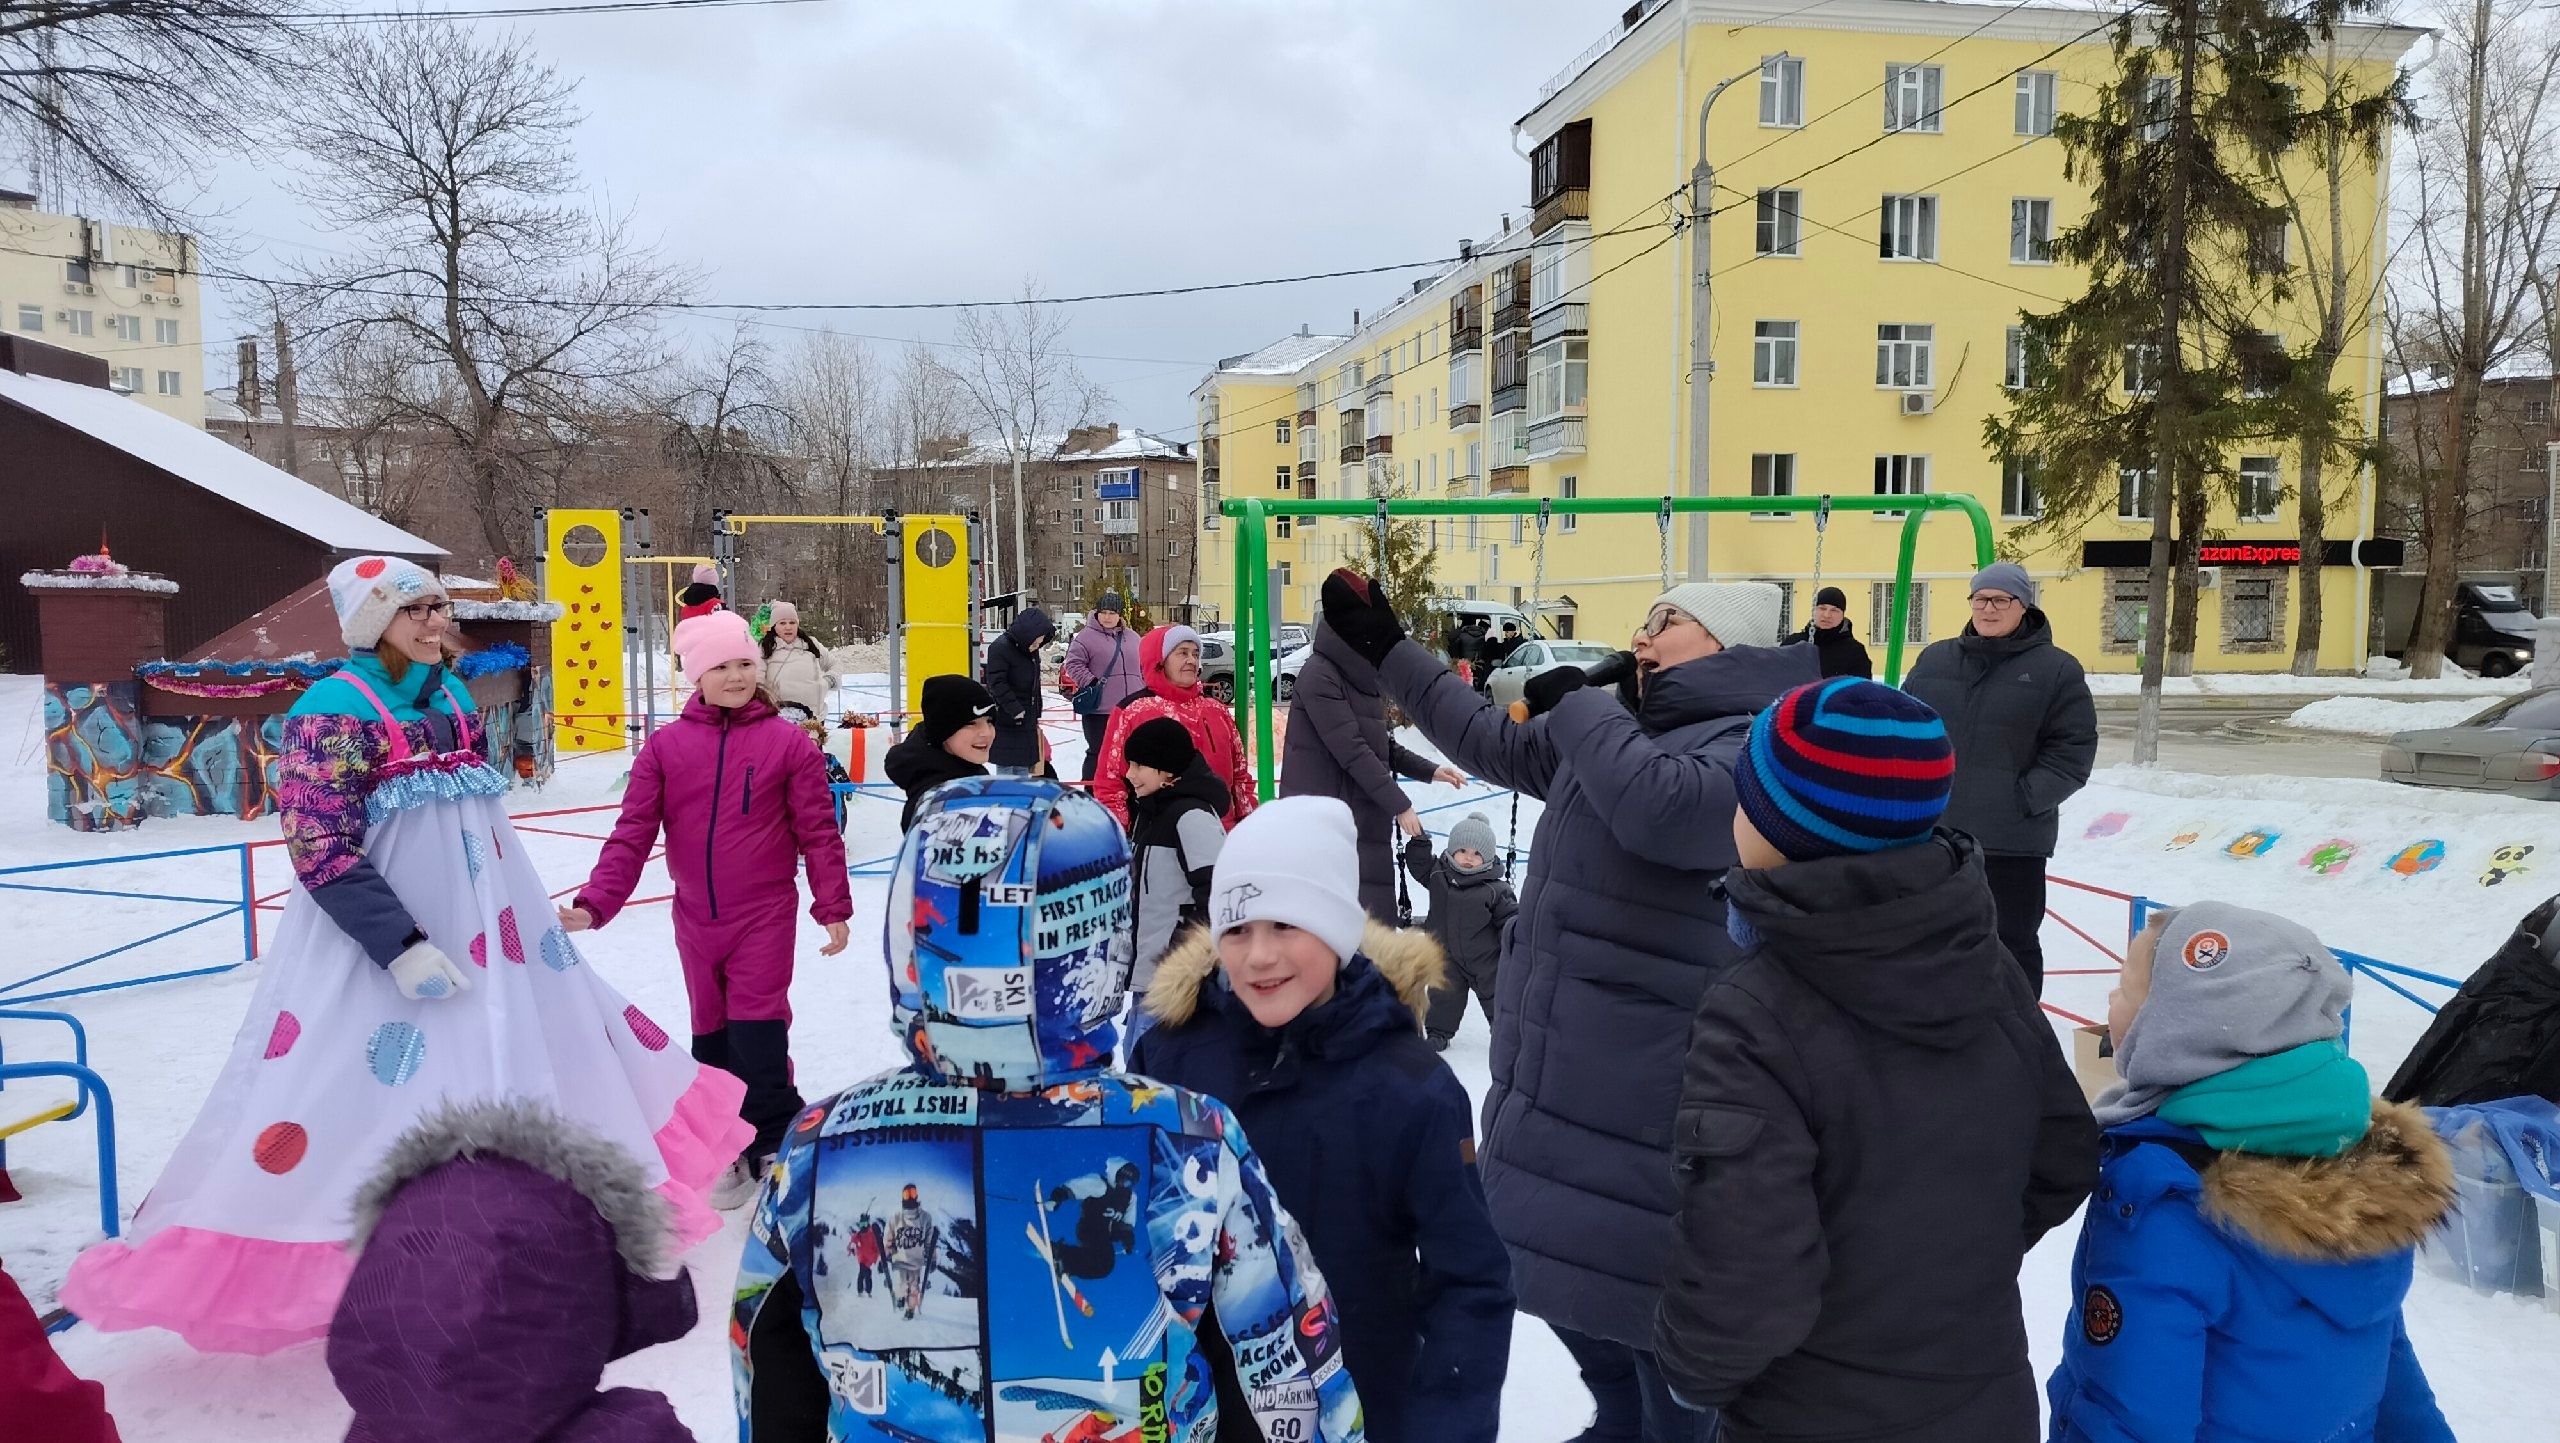 26 декабря педагоги Молодёжного центра "Вираж" провели Новогодний праздник в "Башкирском дворике", расположенном на улице Ульяновых, дом 48